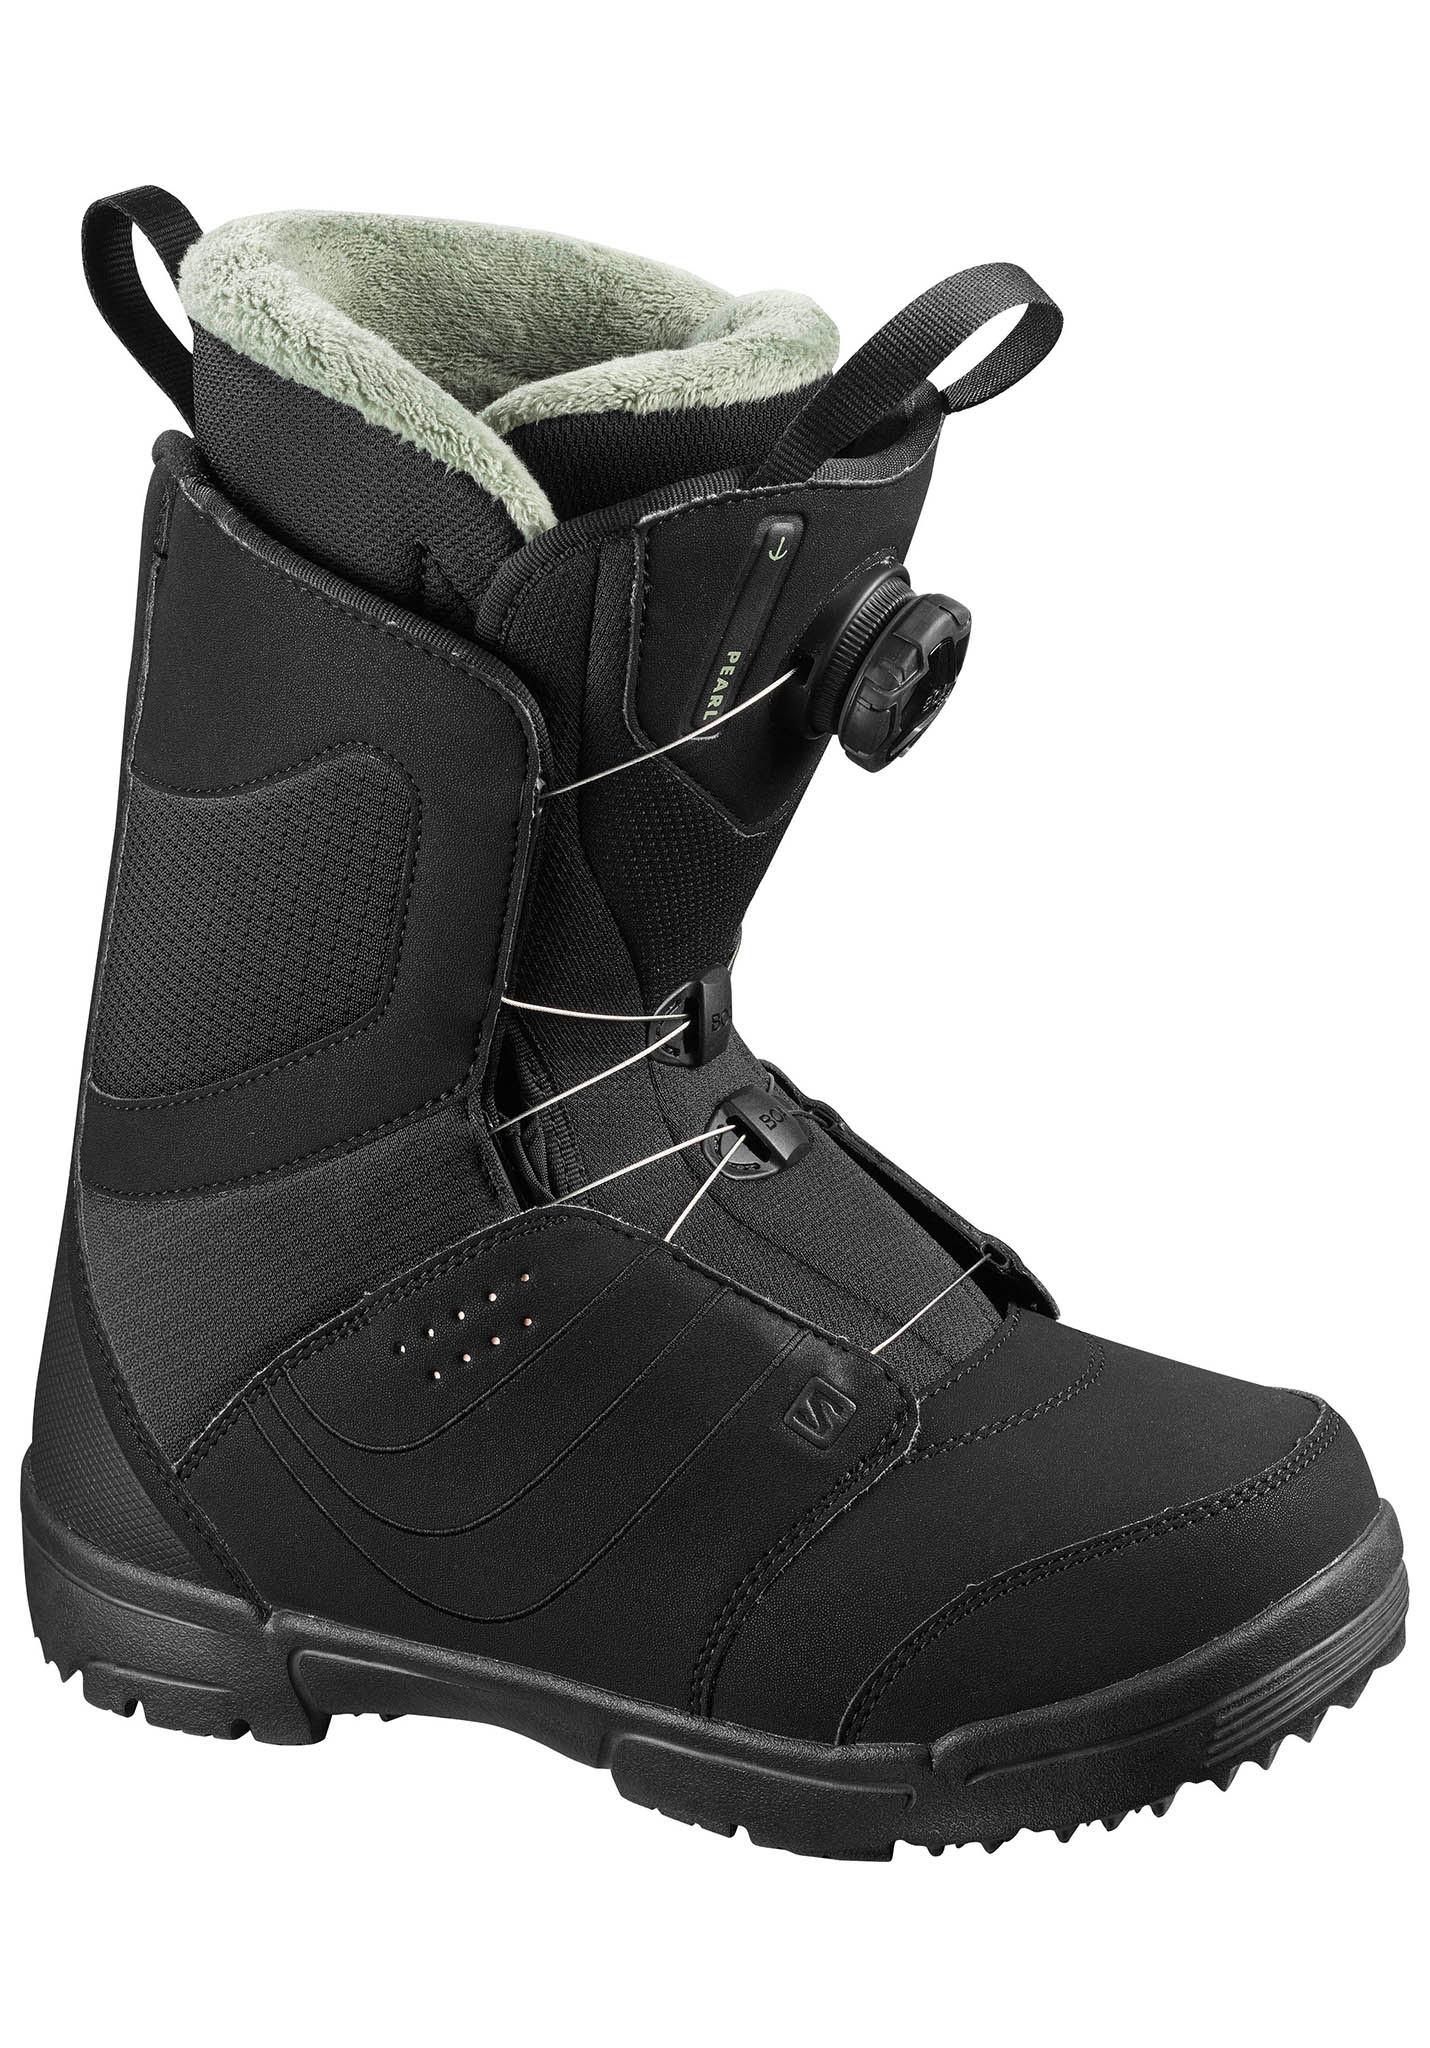 Salomon Pearl Boa Freeride Snowboard Boots schwarz/schwarz/tropischer pfirsich 40